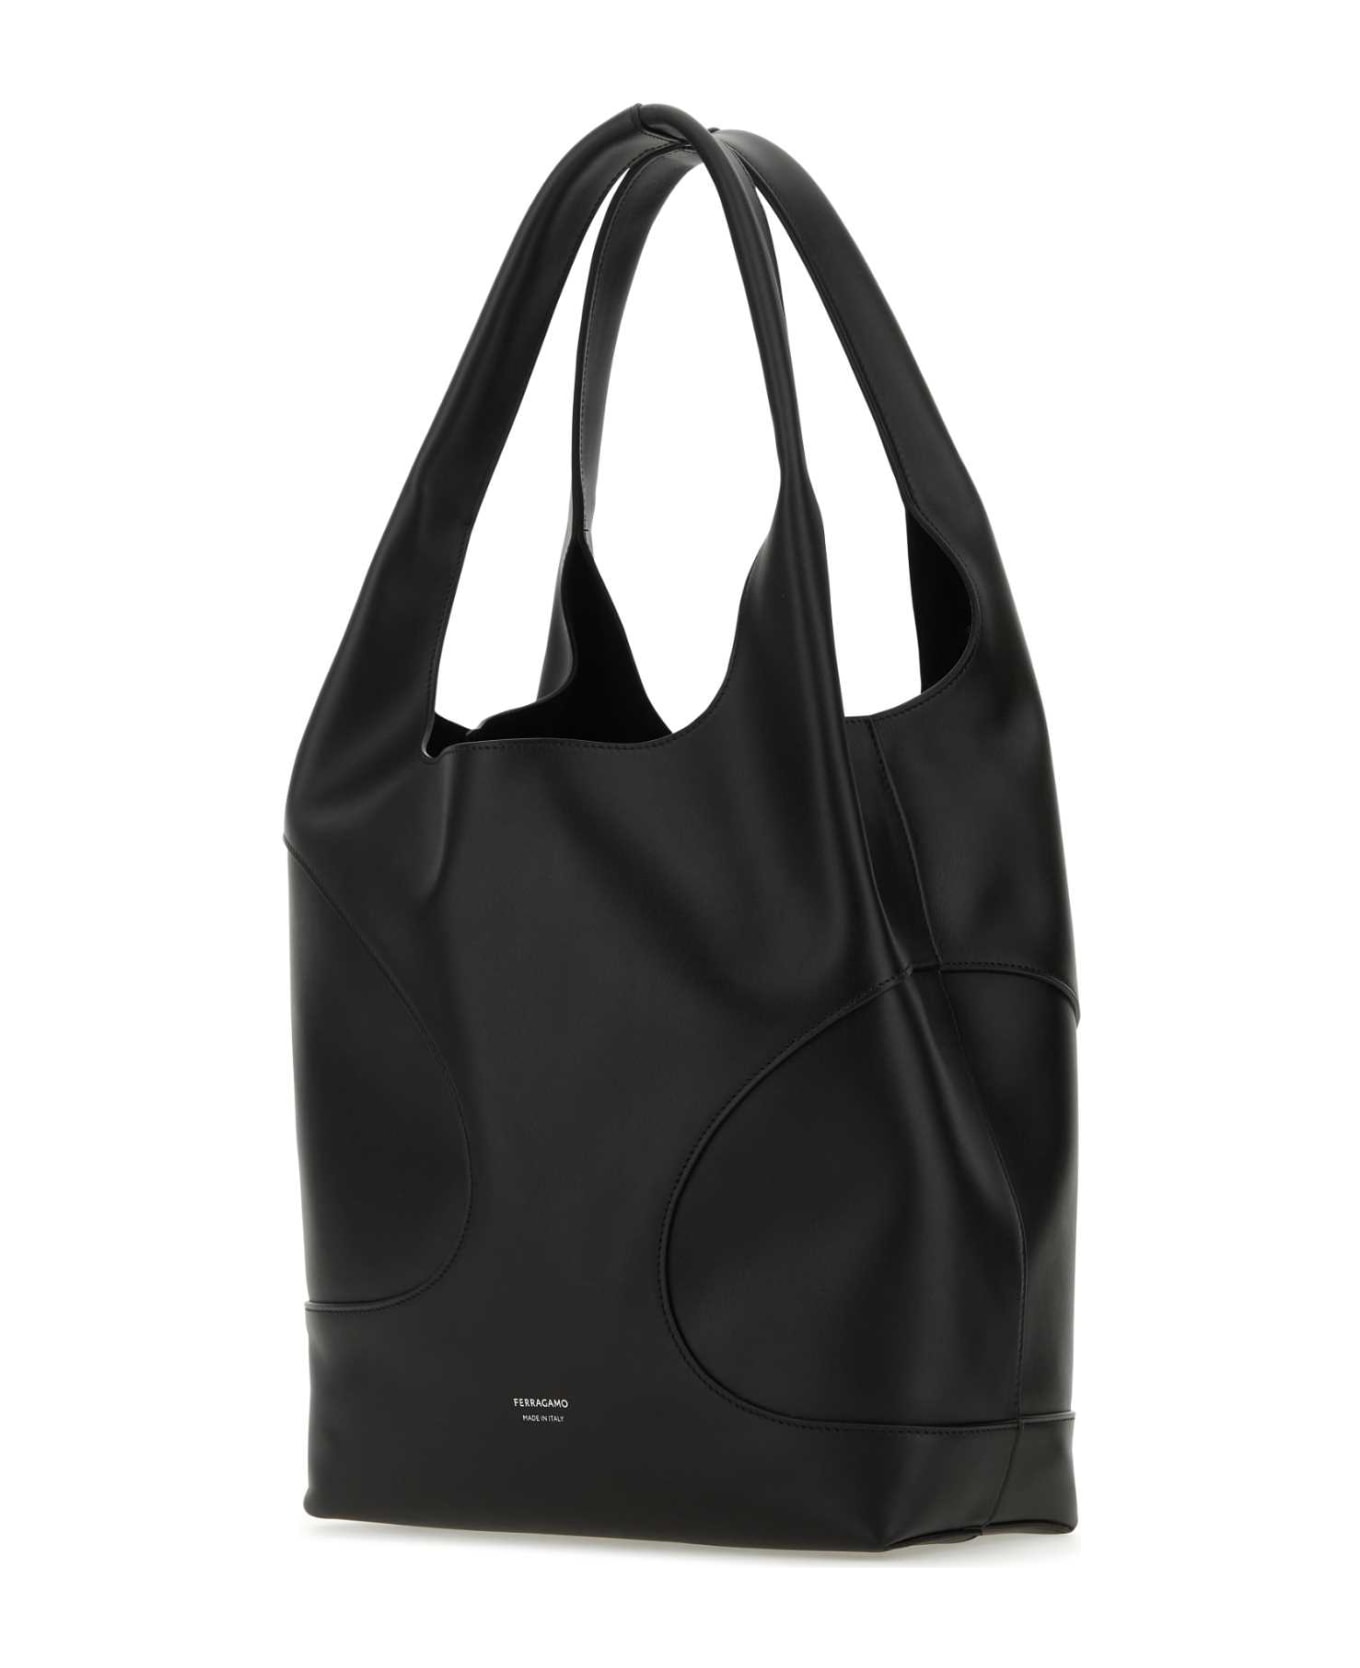 Ferragamo Black Leather Shoulder Bag - TESTADIMORODARKBAROLODARKBAROLO